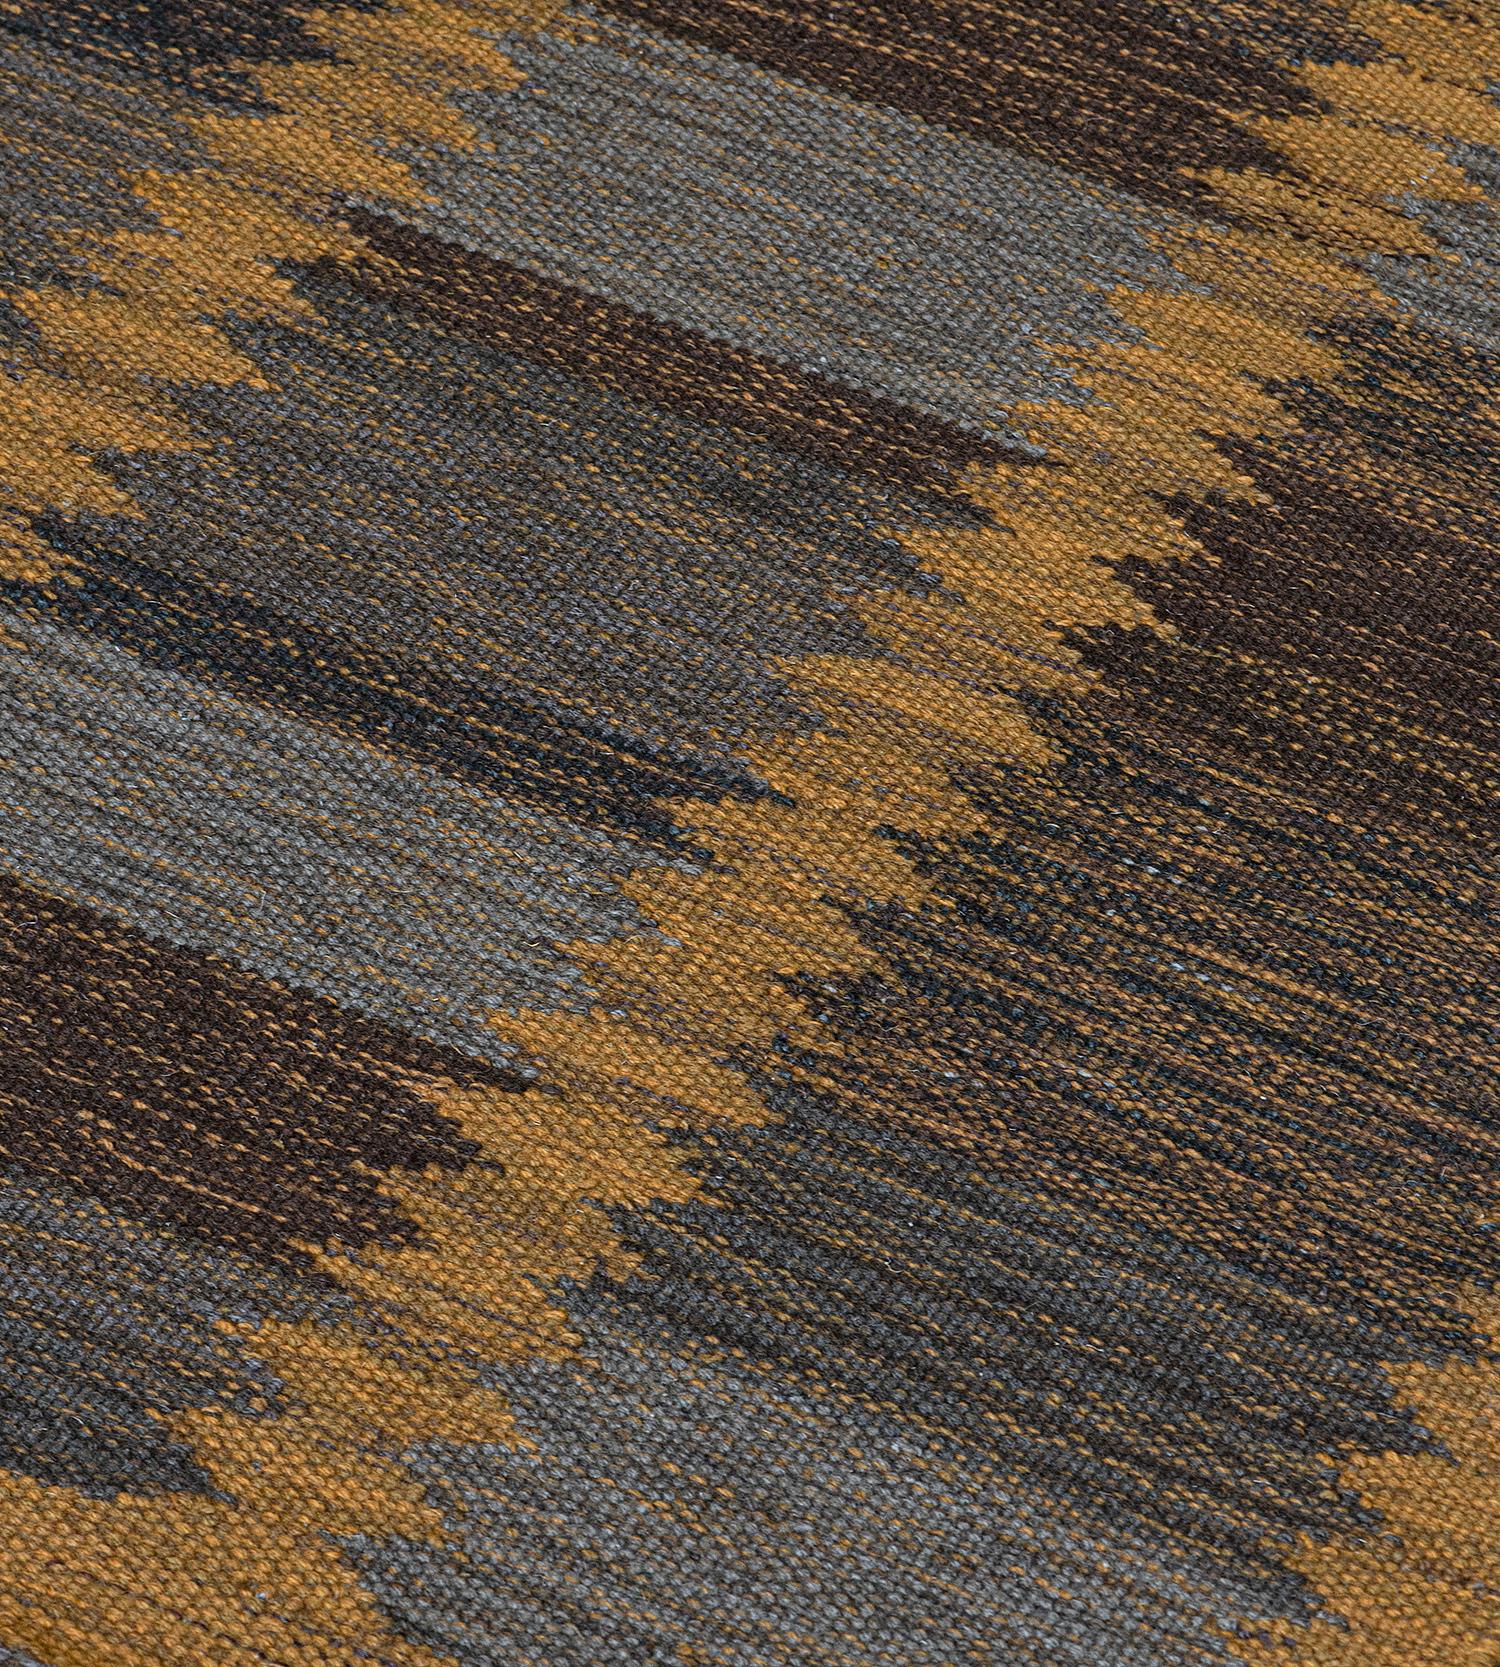 Die Kollektion Mansour Modern Swedish ist in erster Linie von alten schwedischen Flachgewebe-Teppichen inspiriert, deren geometrische Muster auch im 21. Jahrhundert noch aktuell sind. In der Kollektion werden verschiedene Flachgewebetechniken